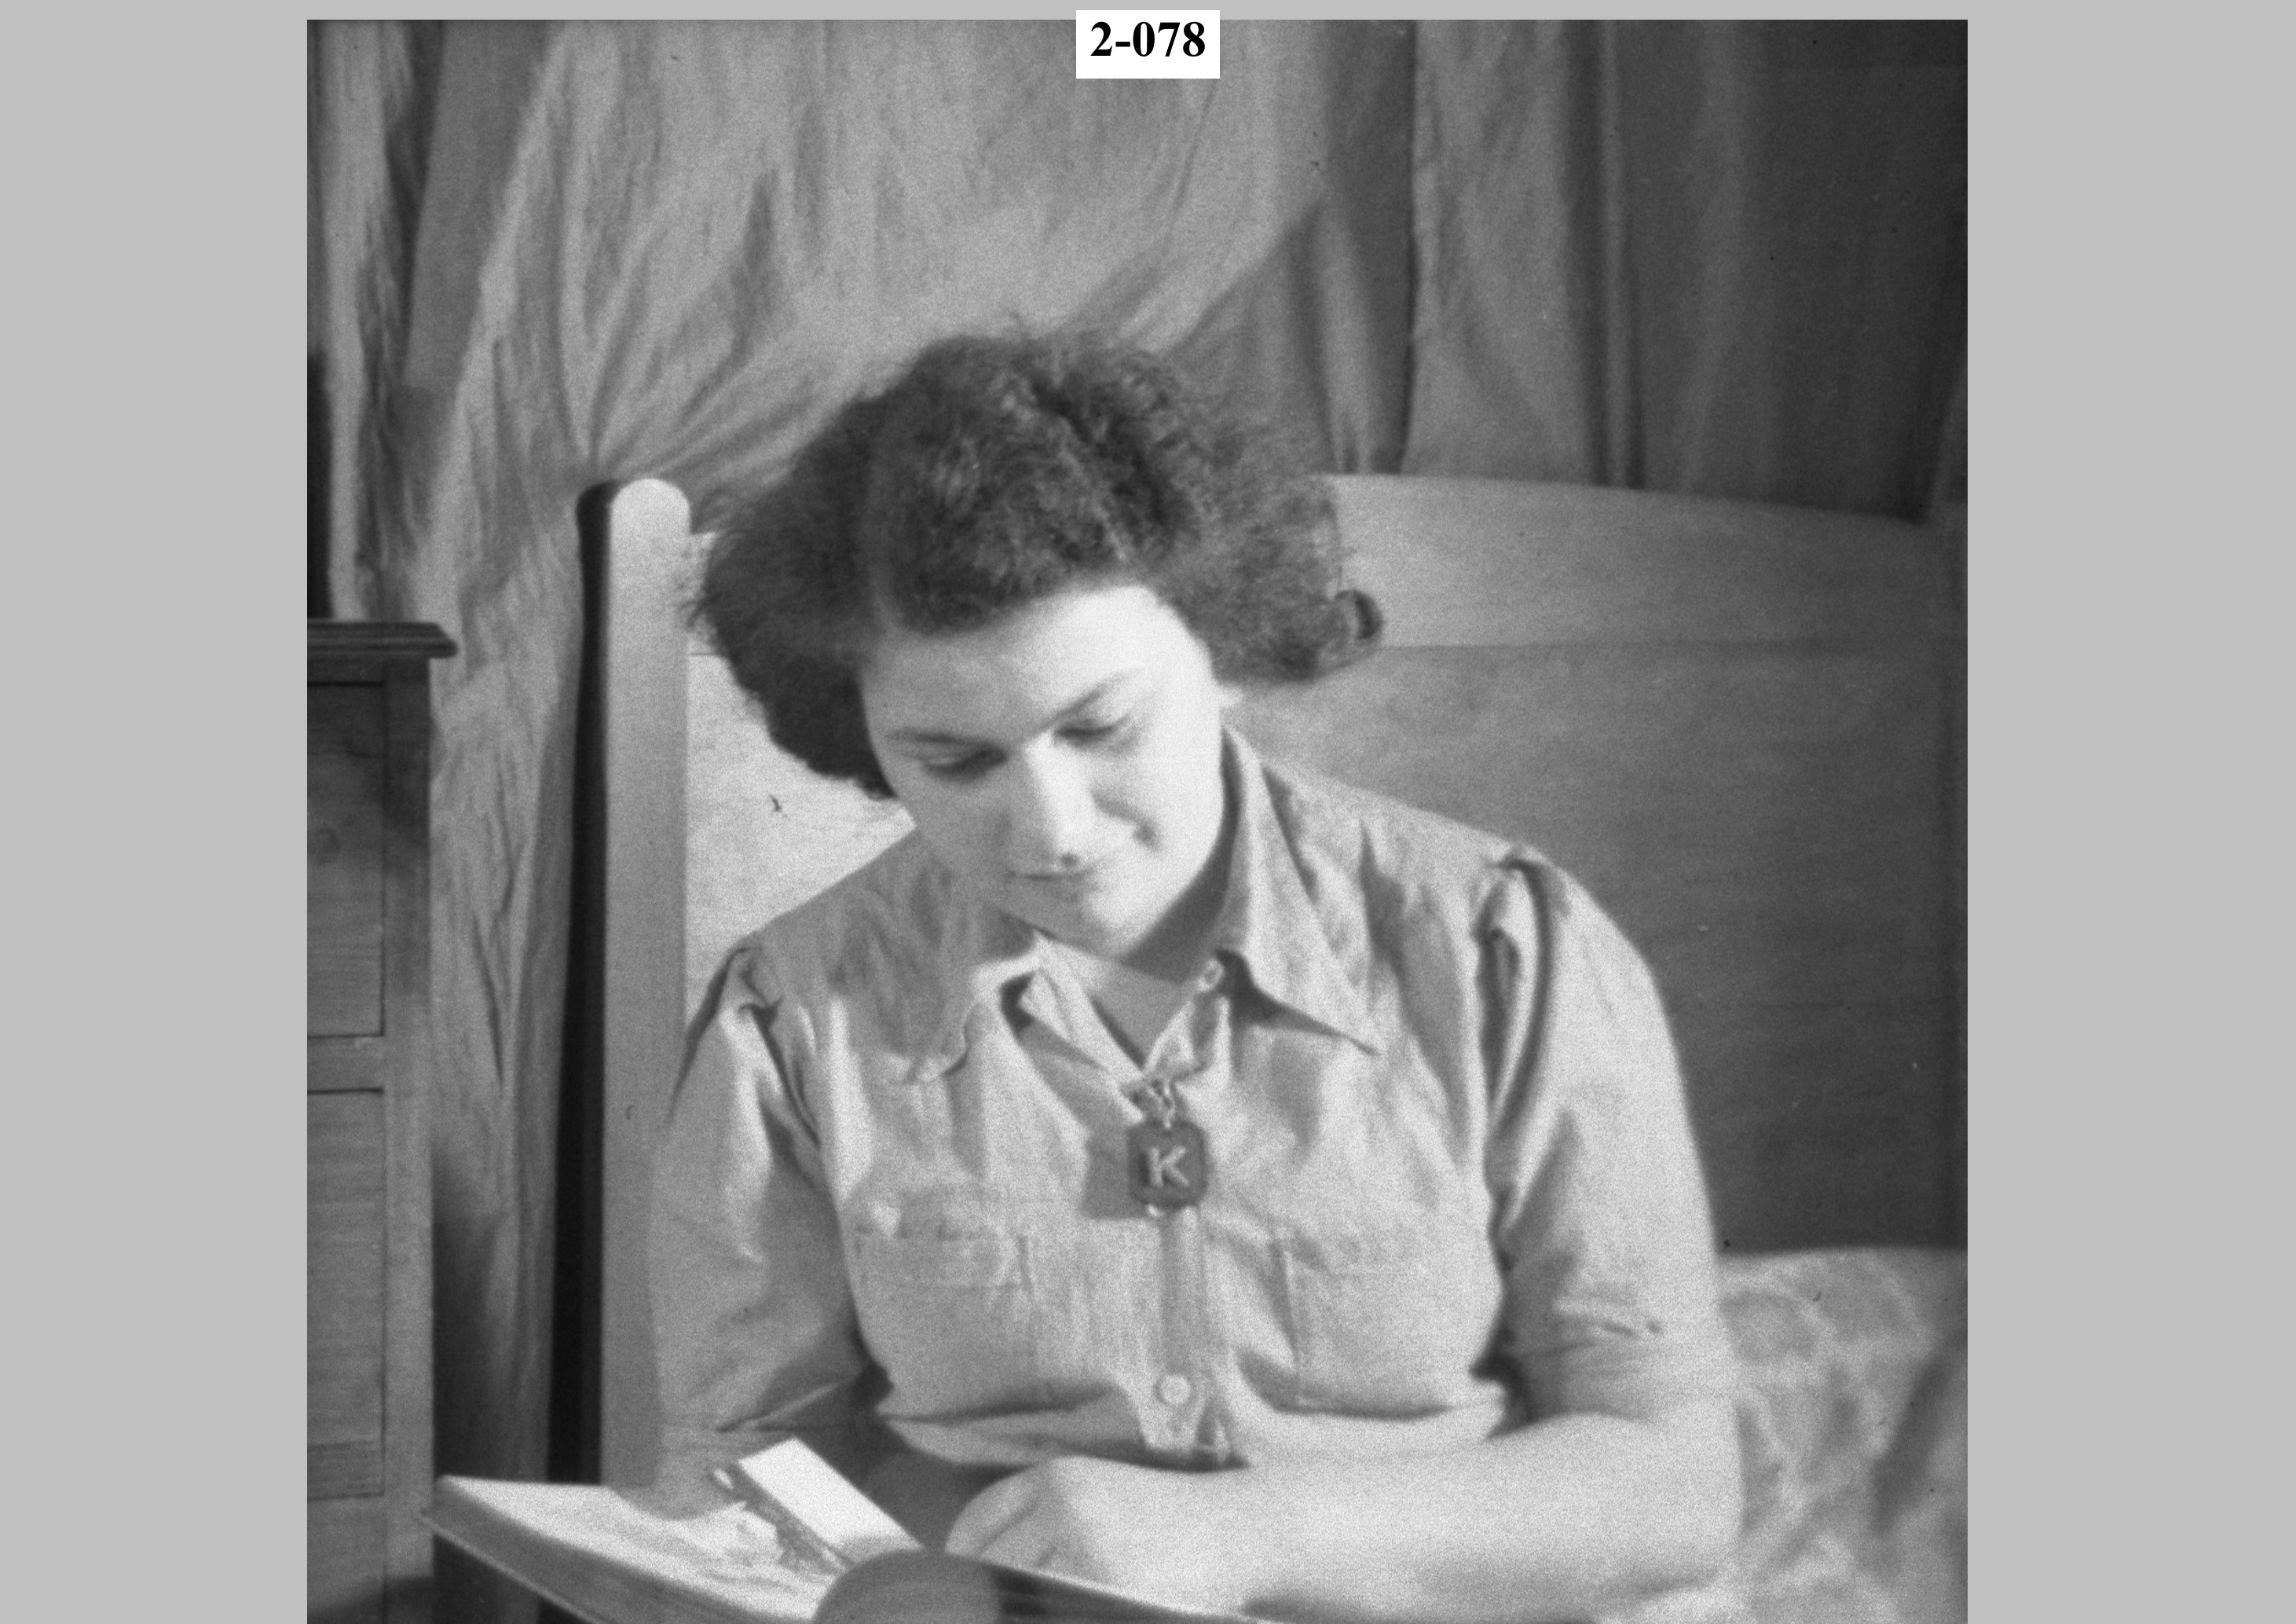 Girl reading book.jpg